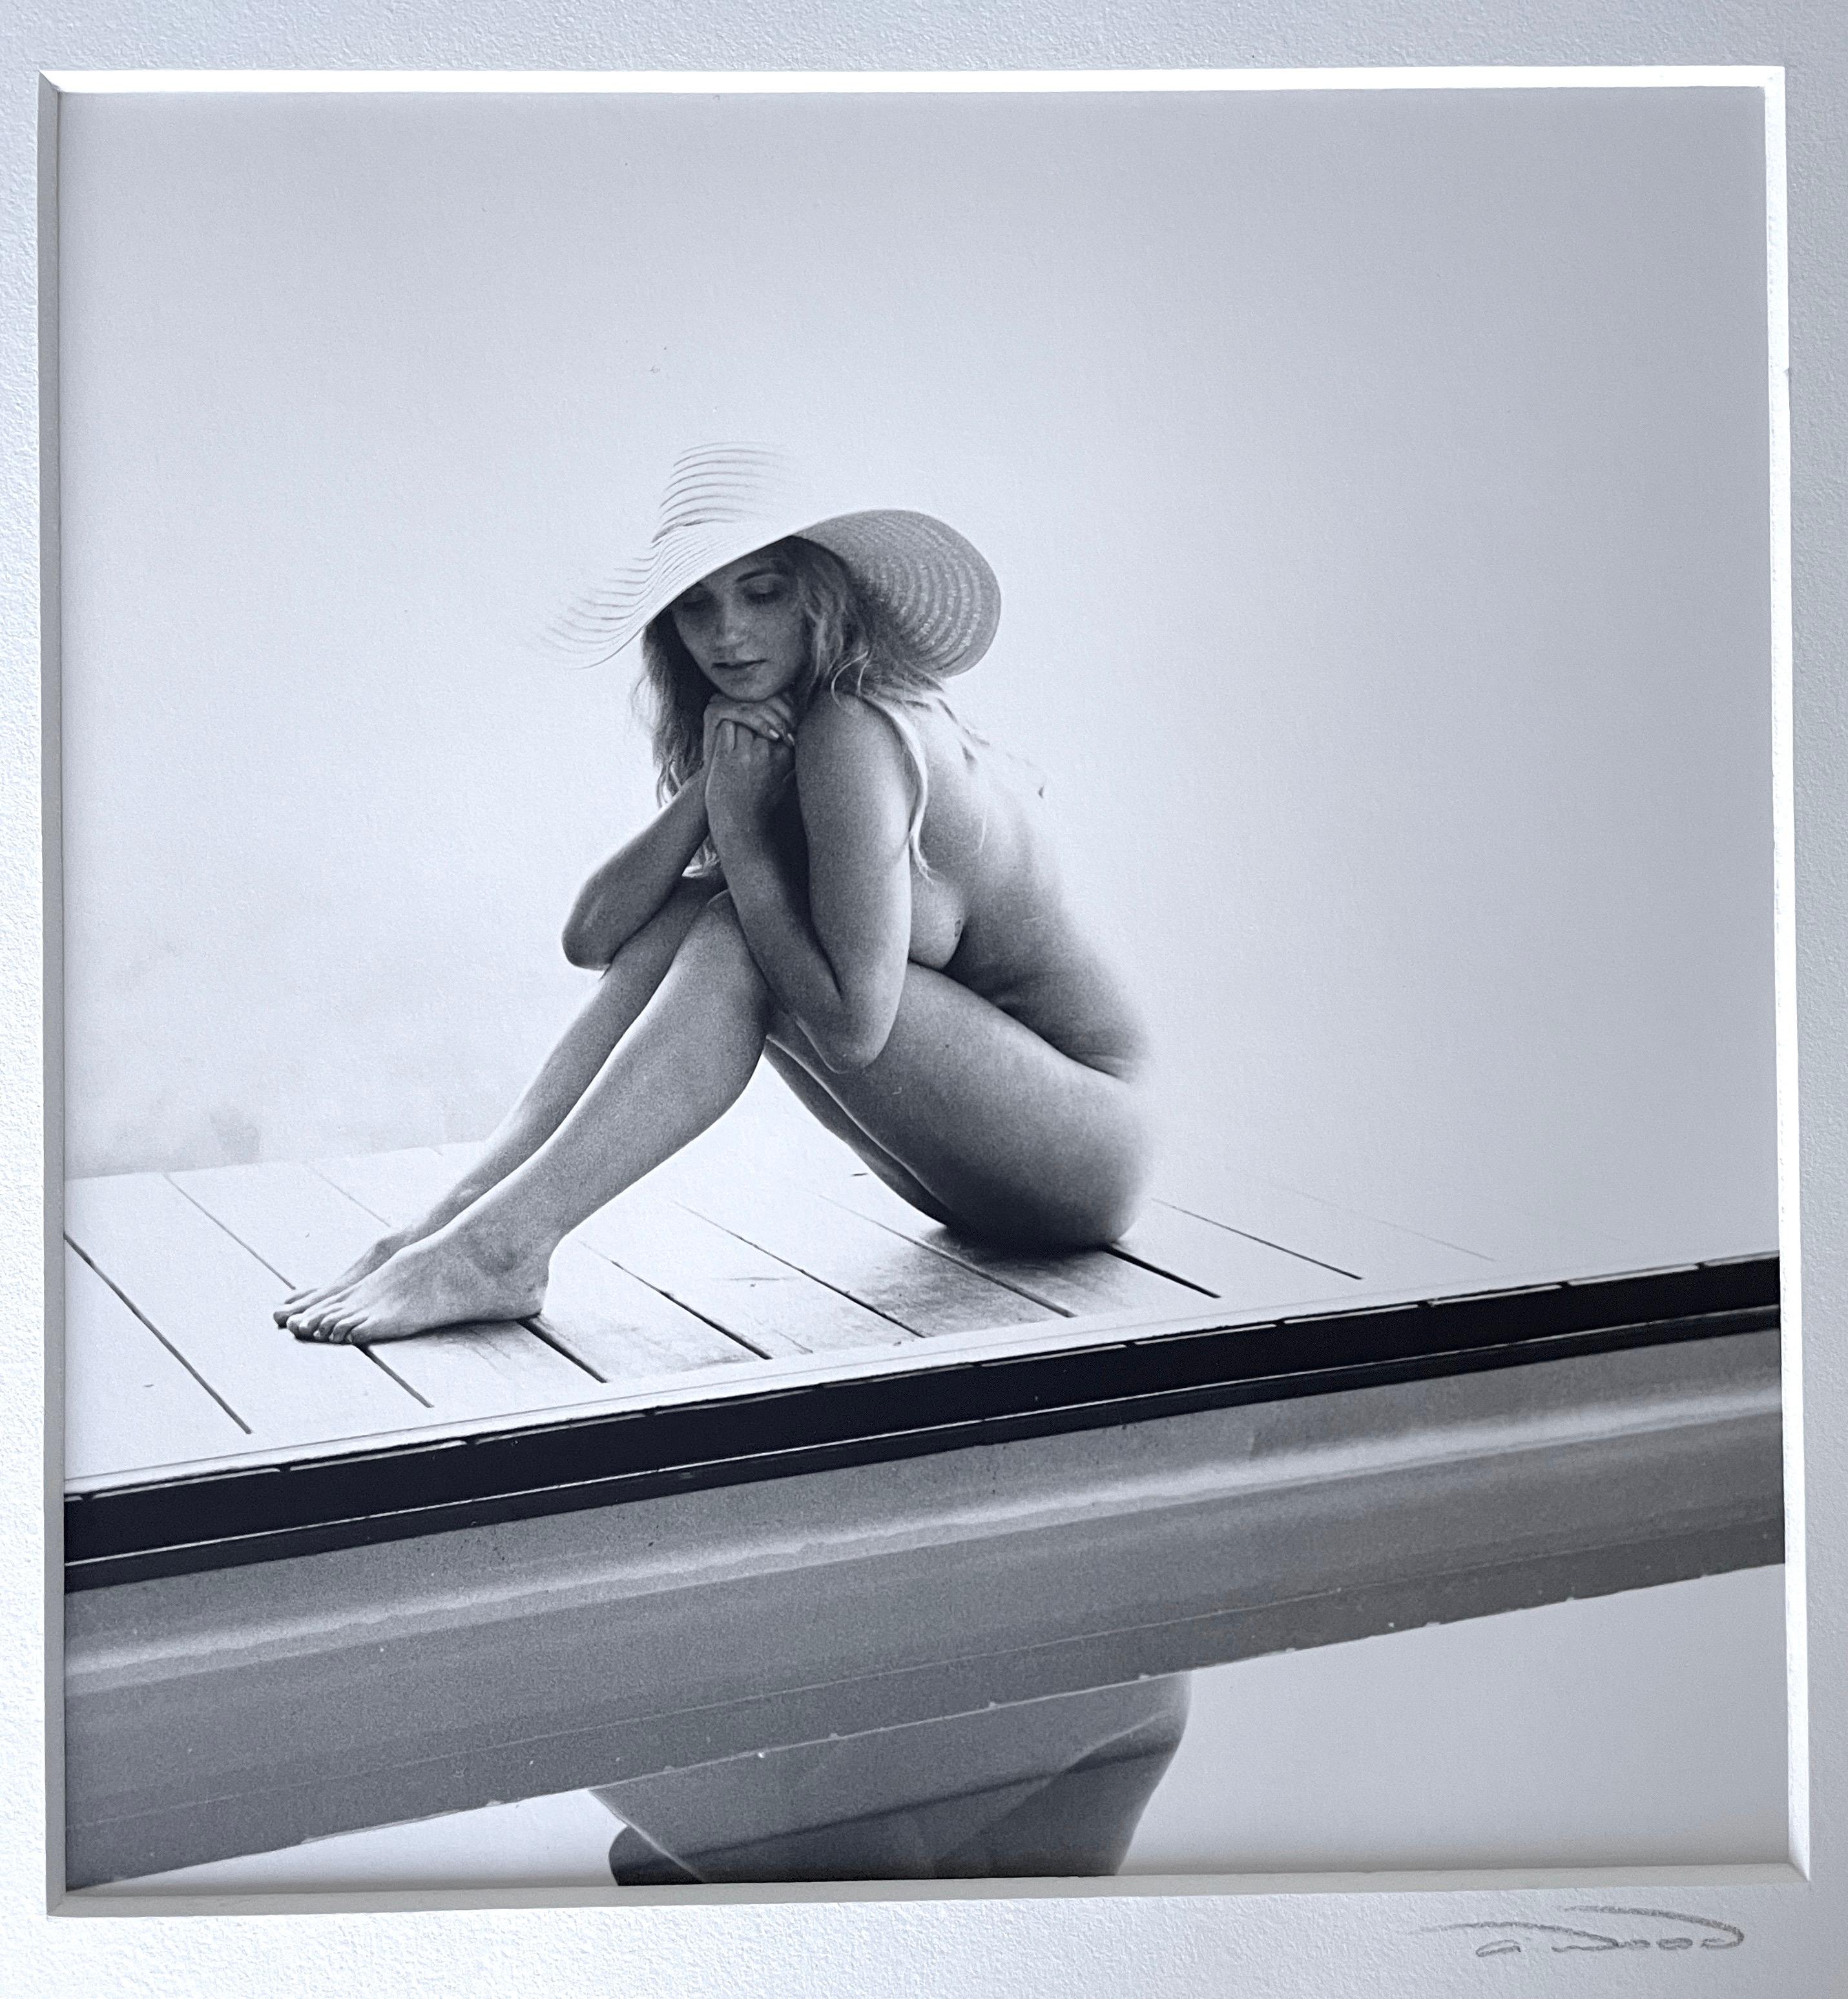 Reflection, Nackte Frau mit Hut von Pool (Grau), Black and White Photograph, von Alli Wood